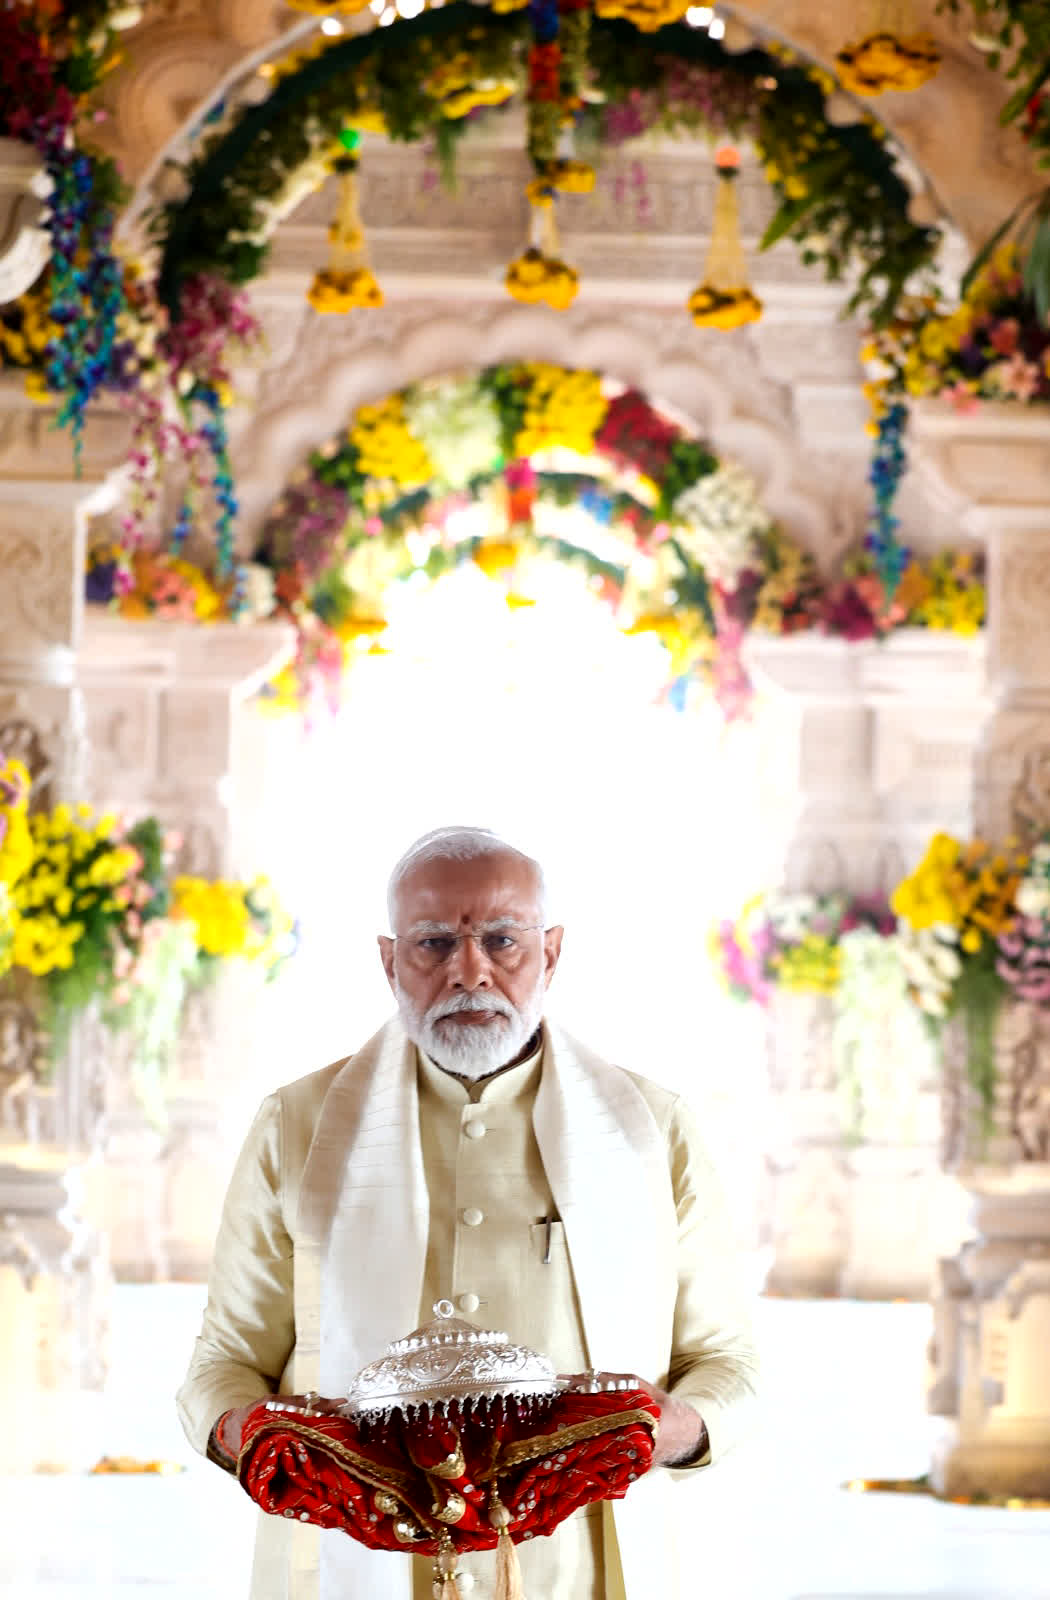 प्रधानमंत्री मोदी गर्भगृह में प्रवेश दौरान अपने हाथ में लाल रंग के कपड़े में लिपटा हुआ चांदी का छत्र भी लेकर आए।